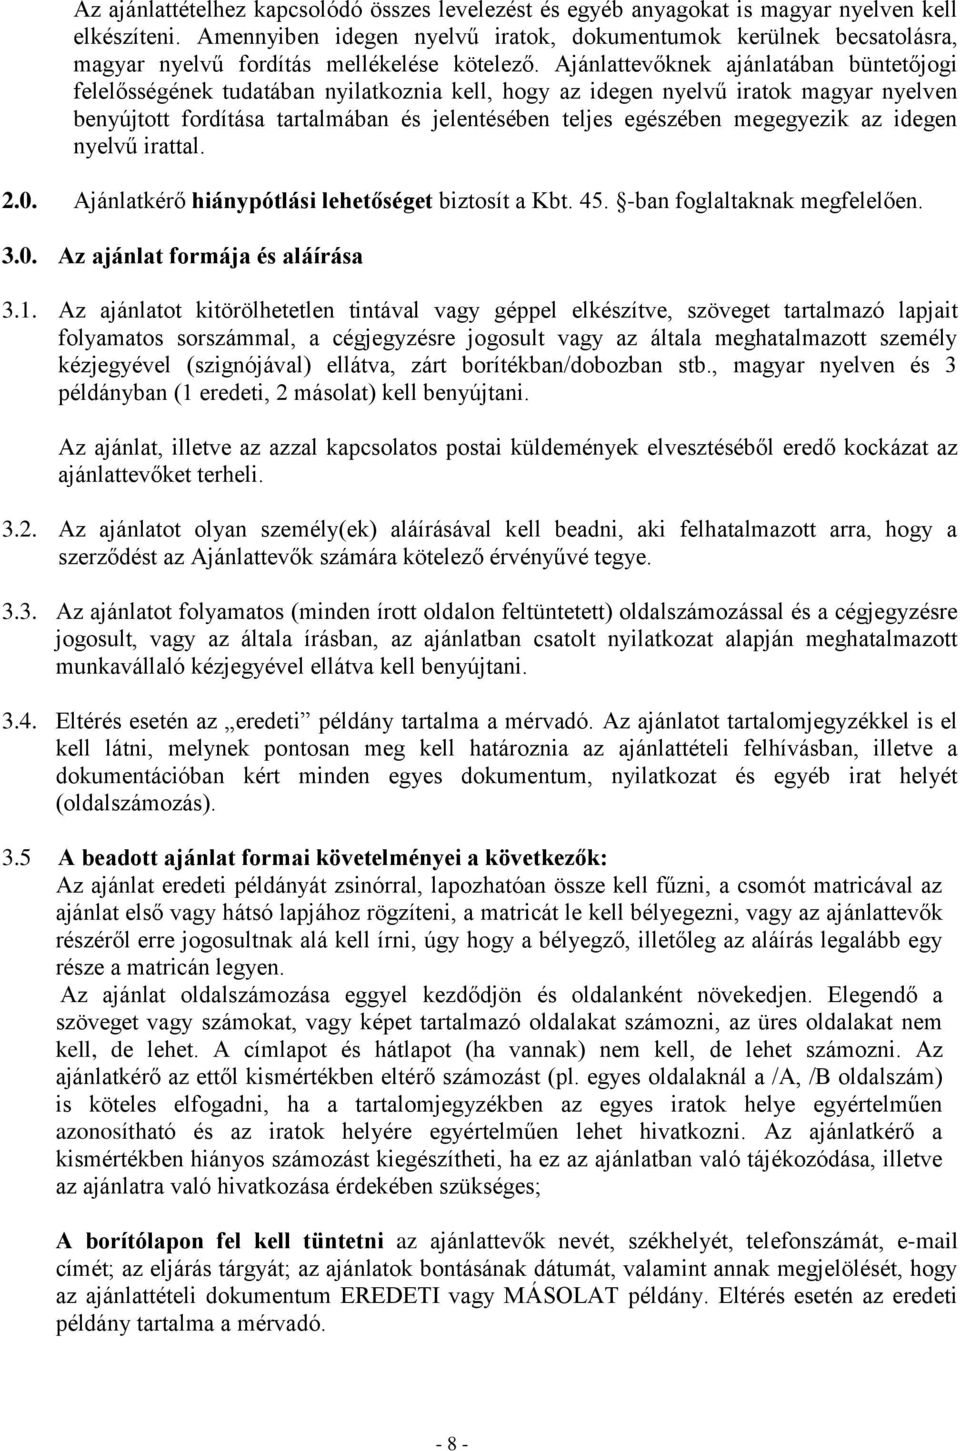 Ajánlattevőknek ajánlatában büntetőjogi felelősségének tudatában nyilatkoznia kell, hogy az idegen nyelvű iratok magyar nyelven benyújtott fordítása tartalmában és jelentésében teljes egészében